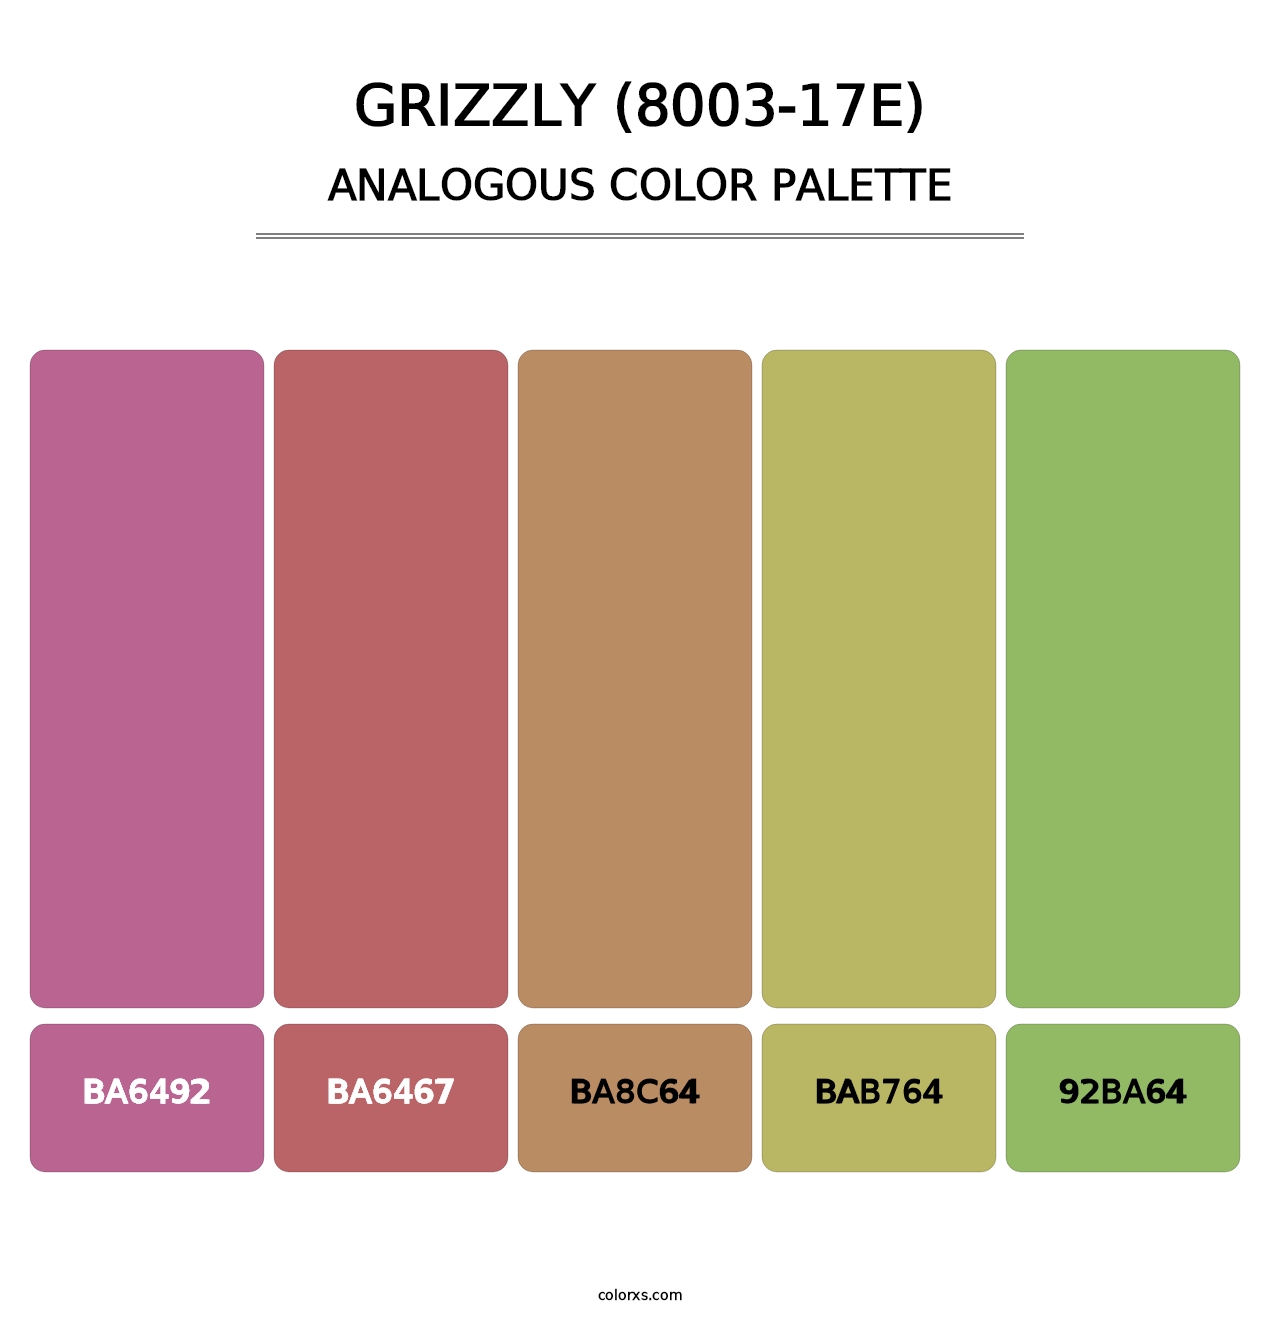 Grizzly (8003-17E) - Analogous Color Palette